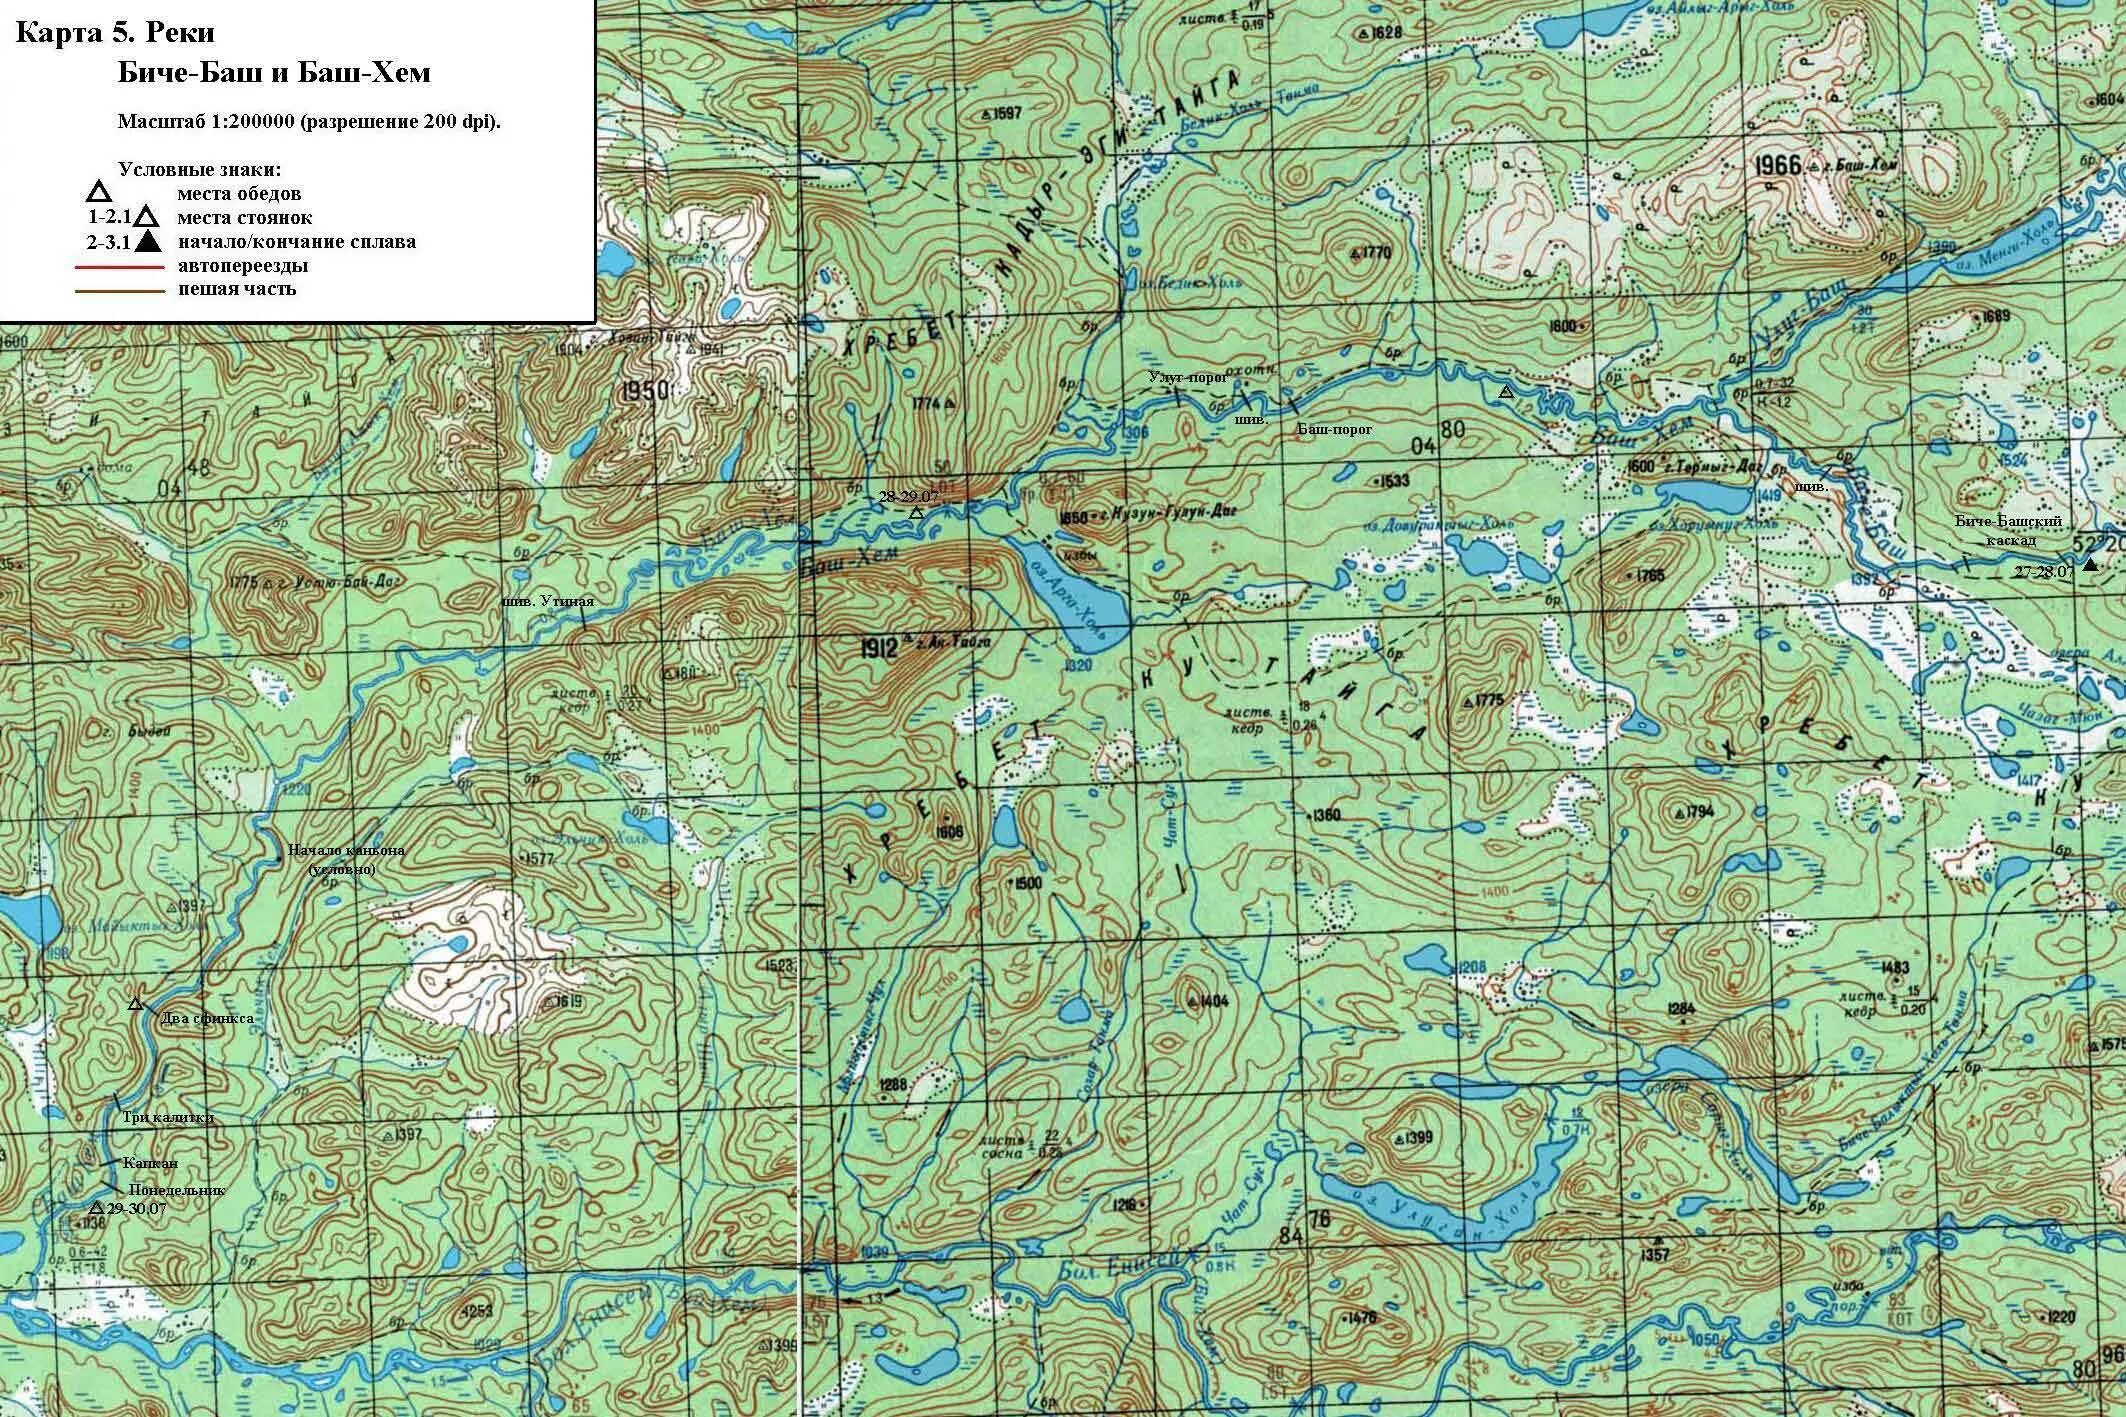 Балыктыг-Хем река карта. Карта рек. Бий Хем карта. Река на топографической карте.